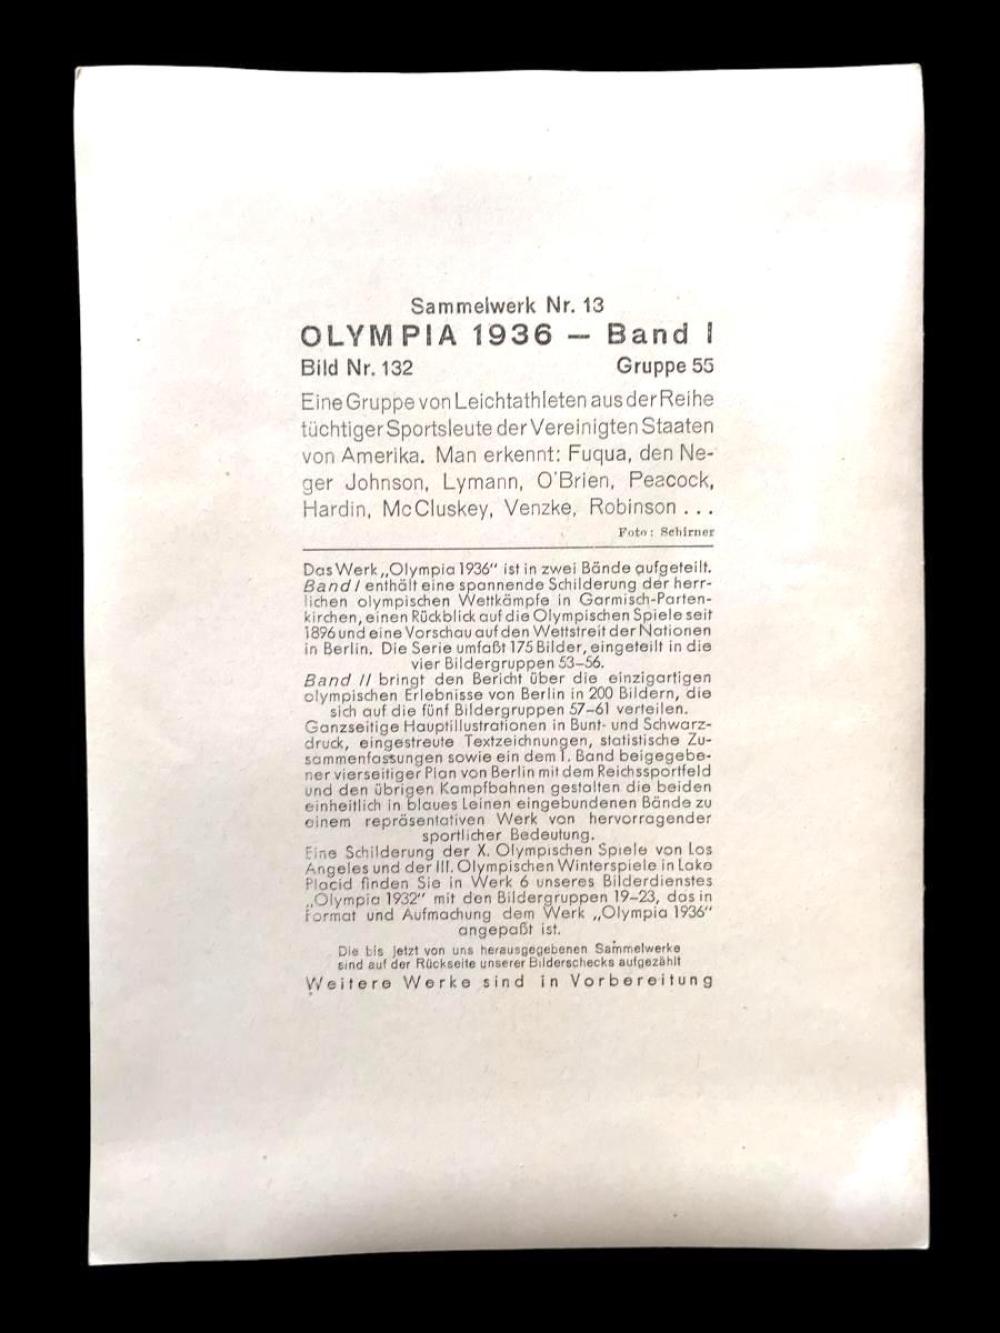 1936 Olimpiyatları takım - Olympia 1936 Band I Cigaretten - Bilderdienst / Jumbo Sigara kartları